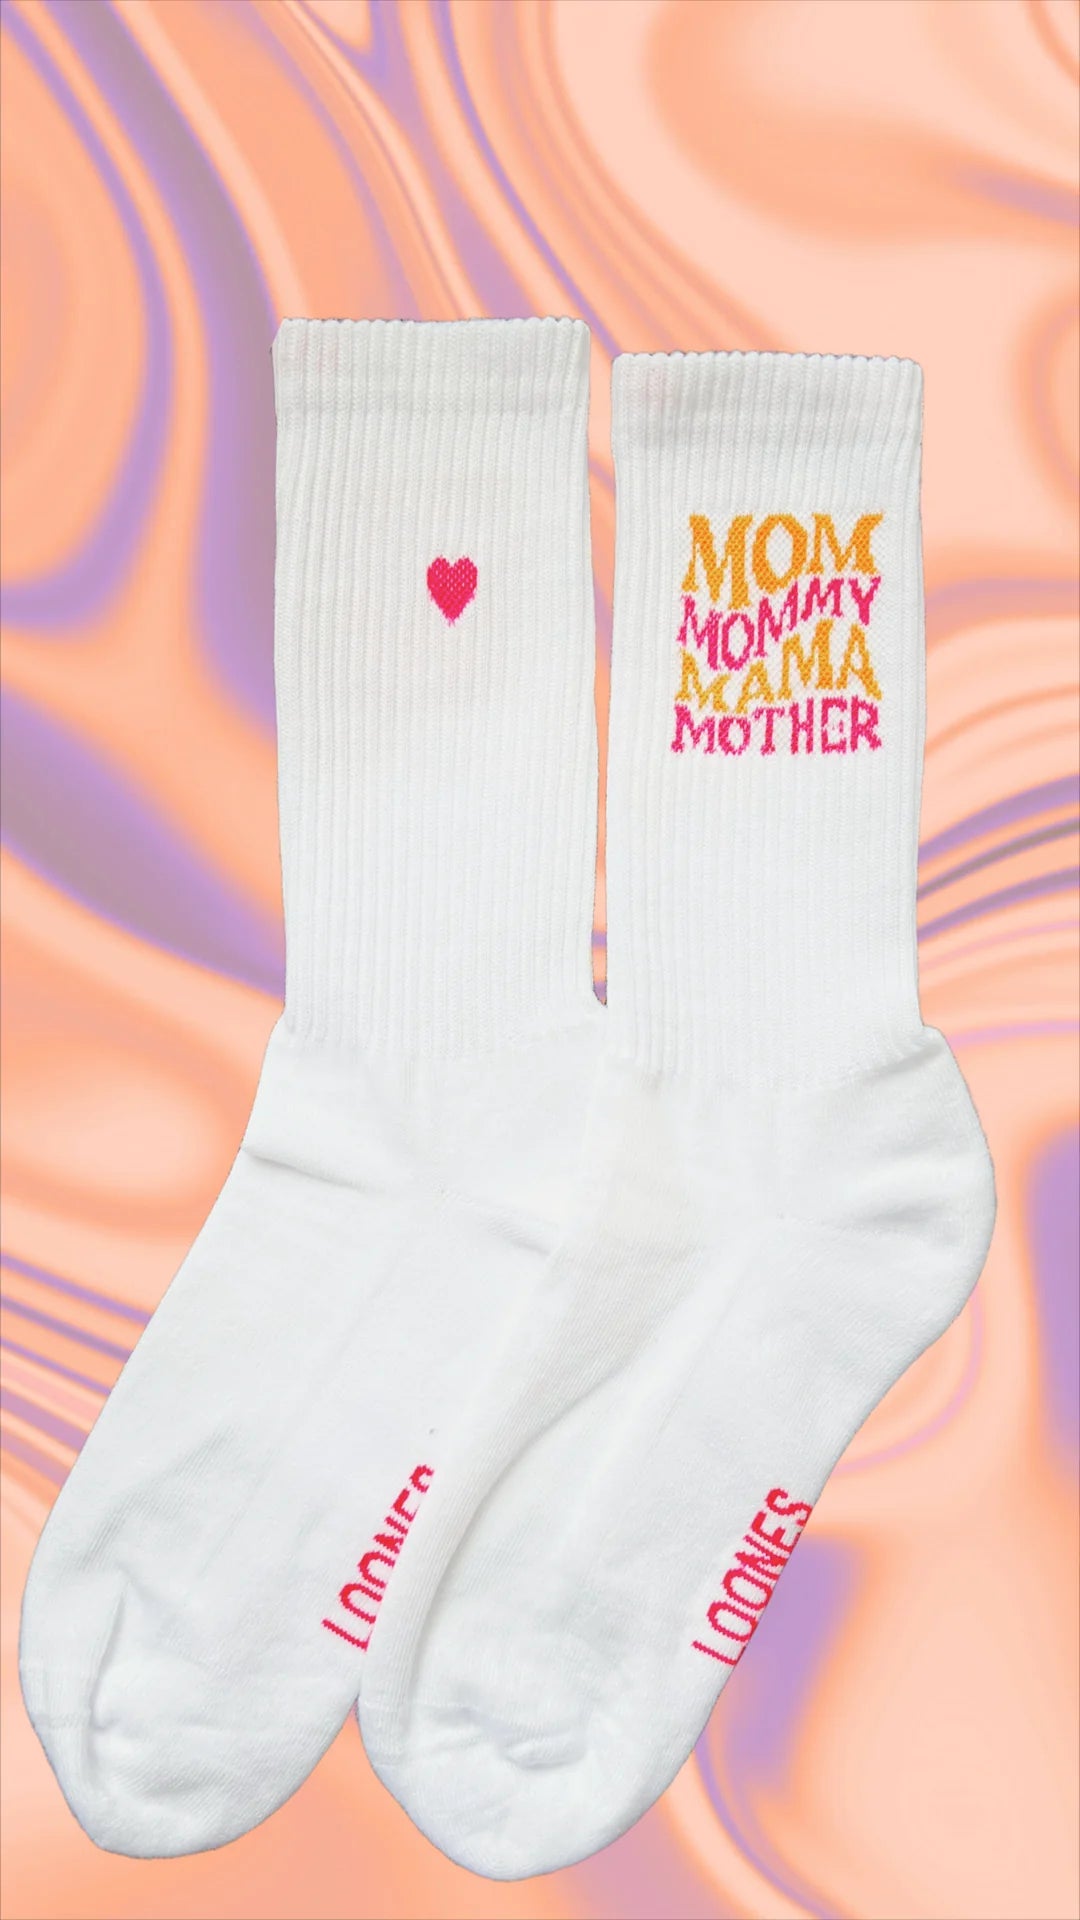 Mommys Socken | Loones